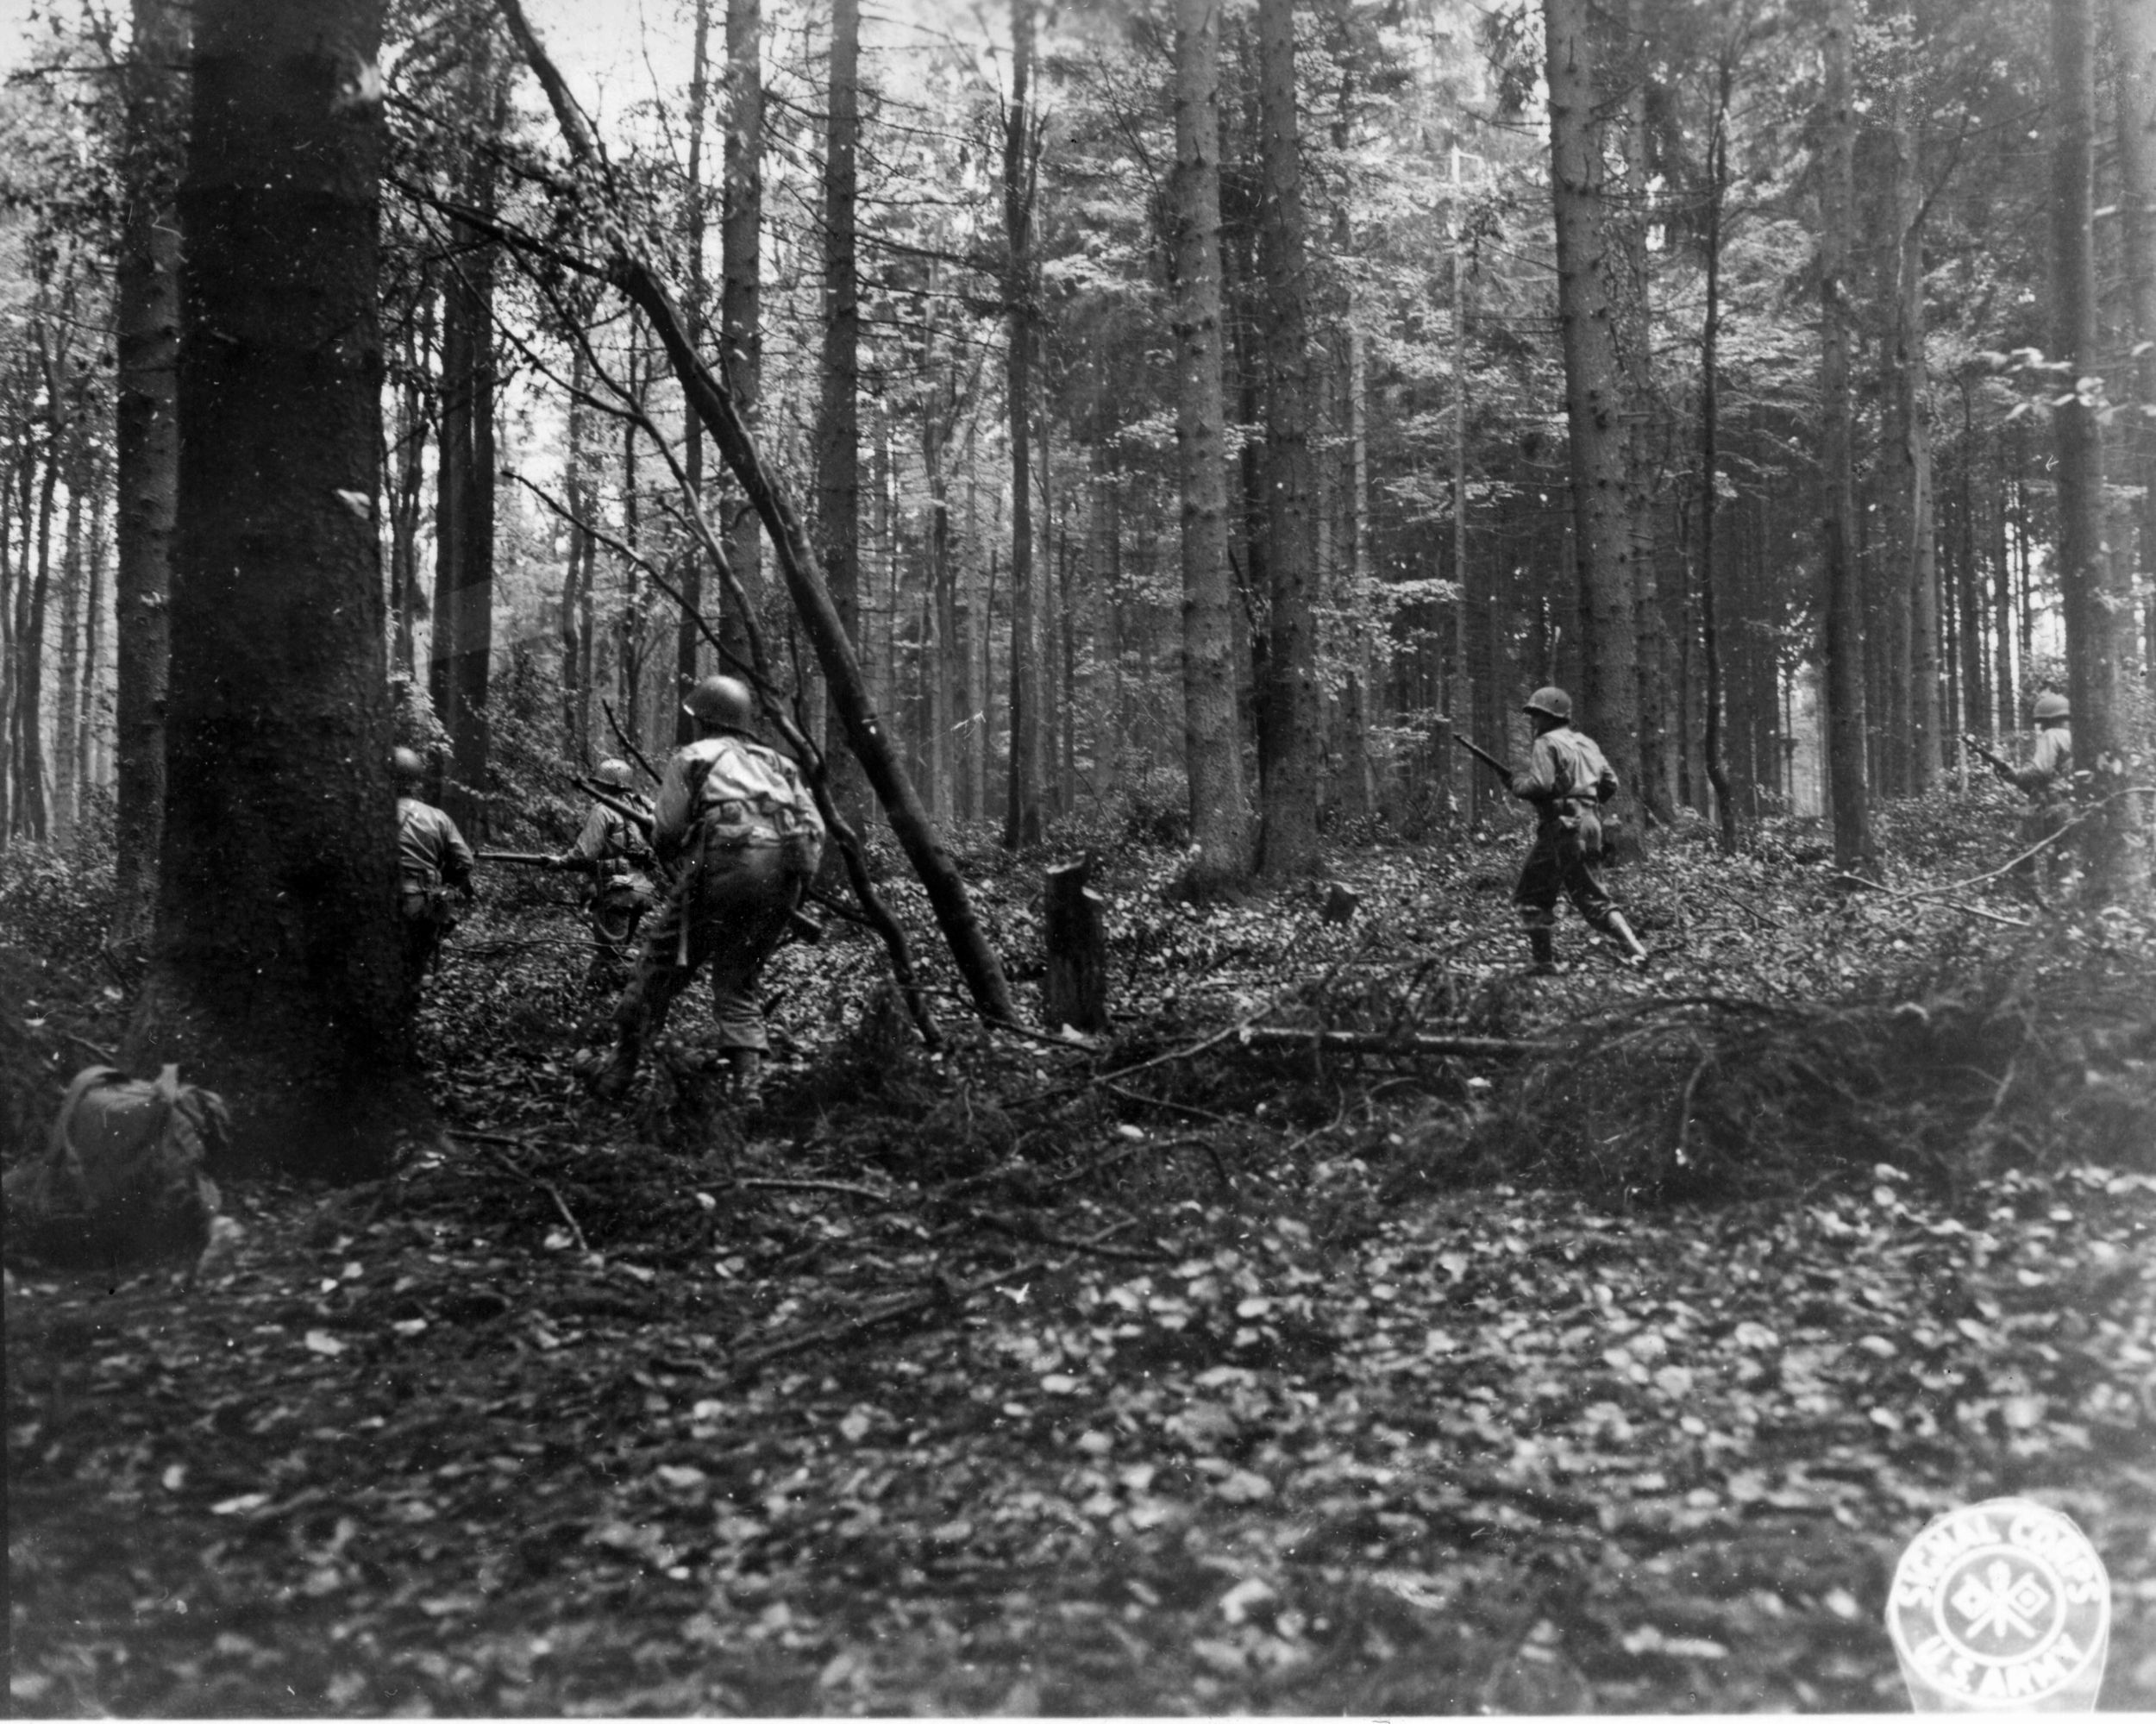 GI riflemen of the 110th Infantry advance through the Hürtgen Forest near Vossenack, Germany, in December 1944.